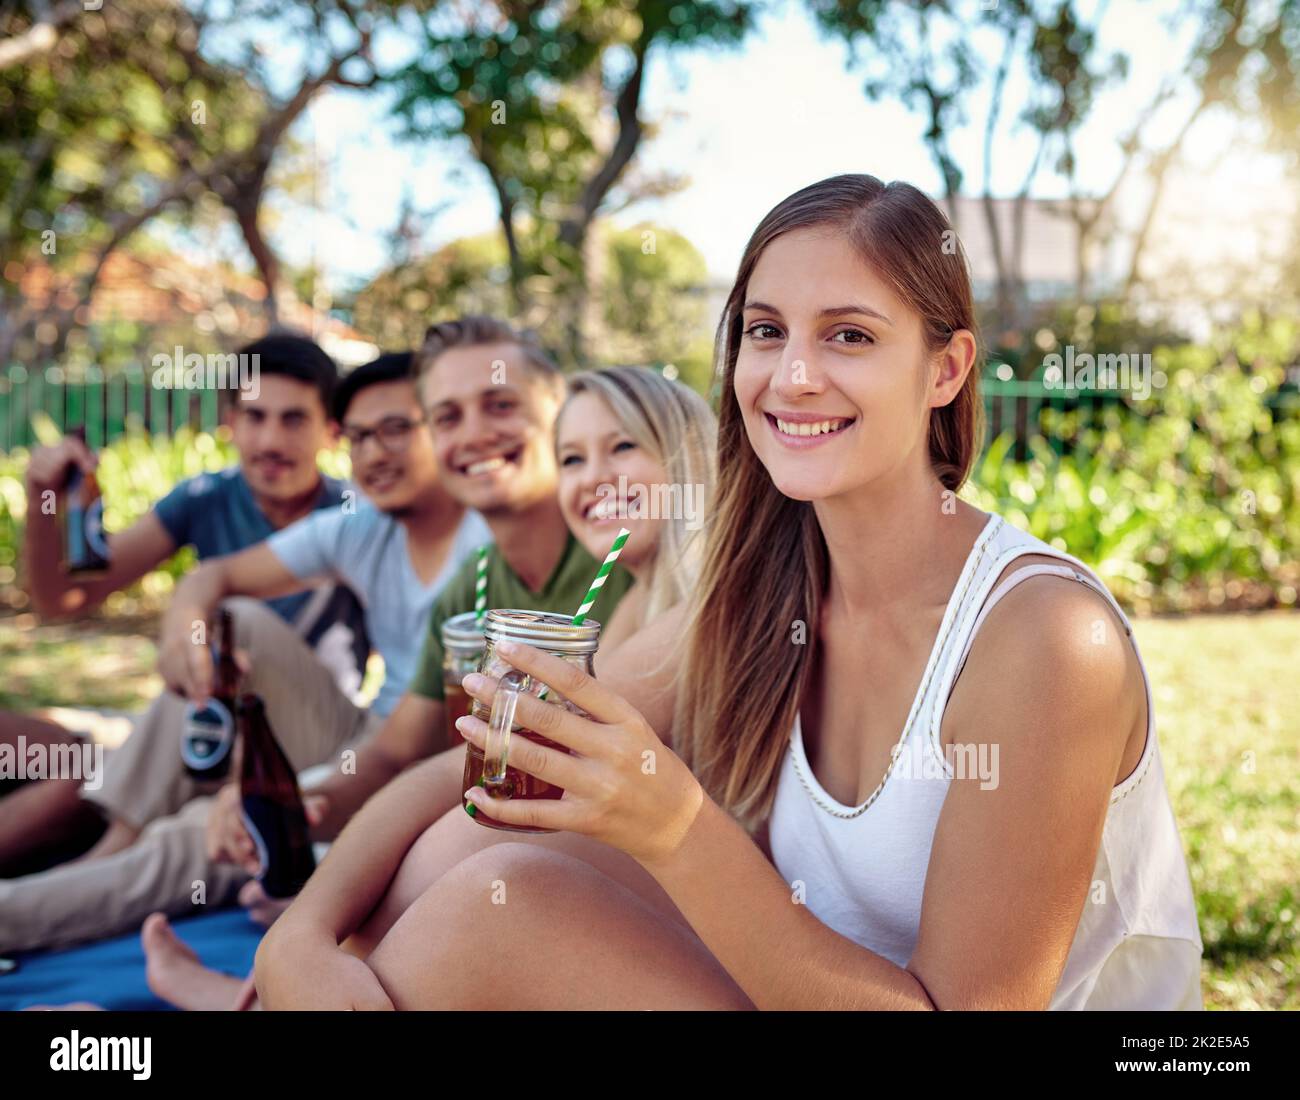 Passer le meilleur temps possible. Portrait court d'une jeune femme attrayante en train de boire quelques verres avec des amis à l'extérieur sous le soleil d'été. Banque D'Images